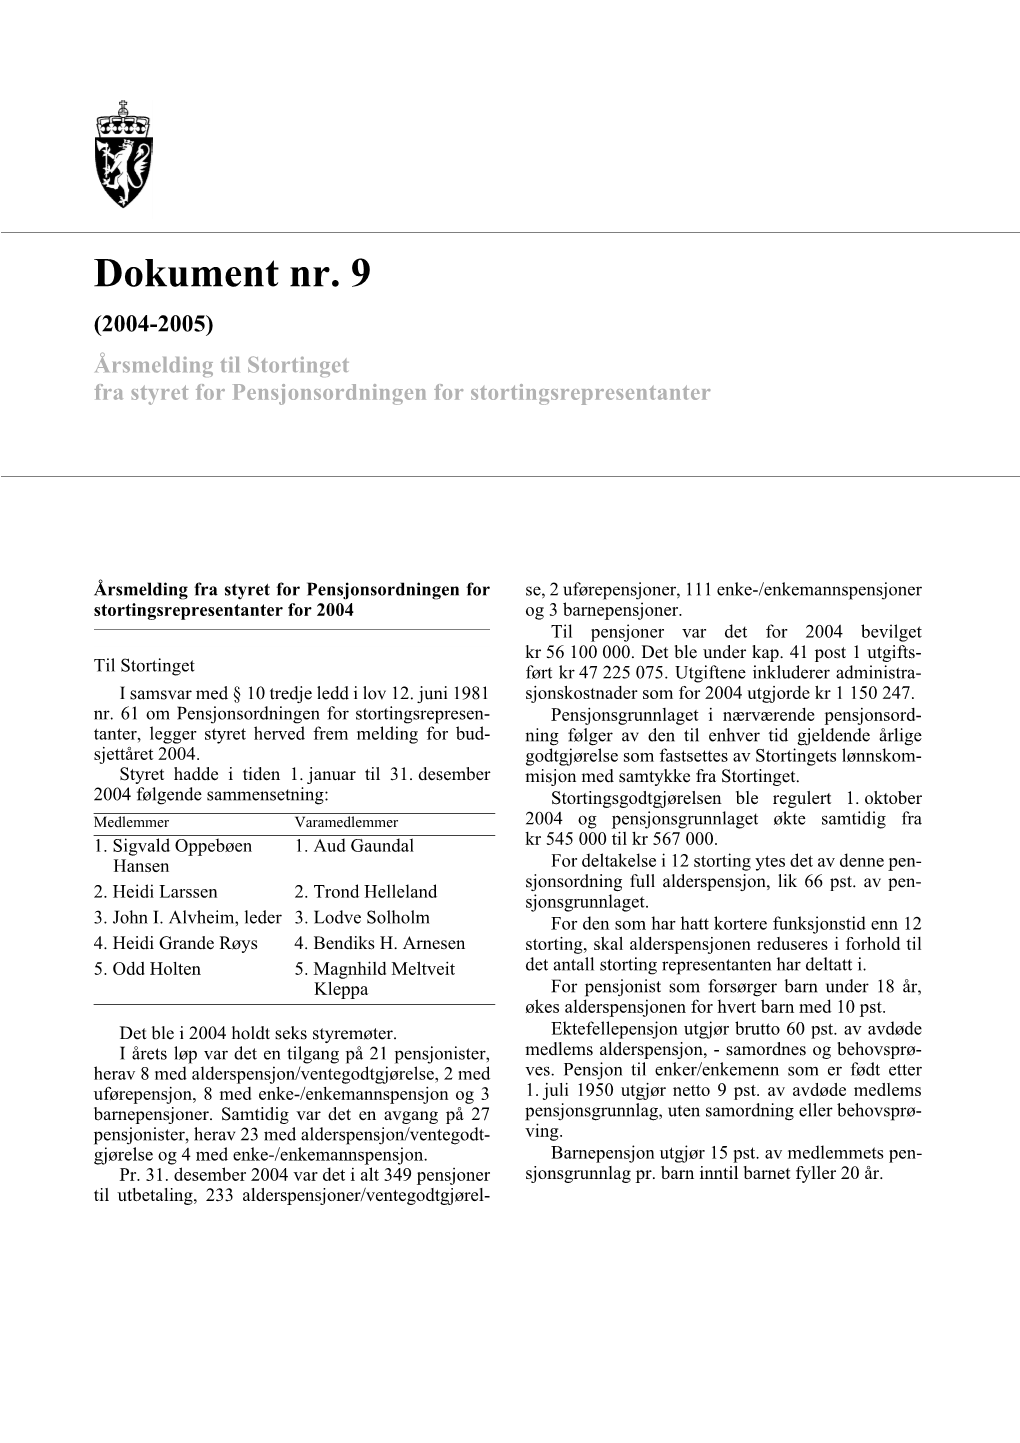 Dokument Nr. 9 (2004-2005) Årsmelding Til Stortinget Fra Styret for Pensjonsordningen for Stortingsrepresentanter